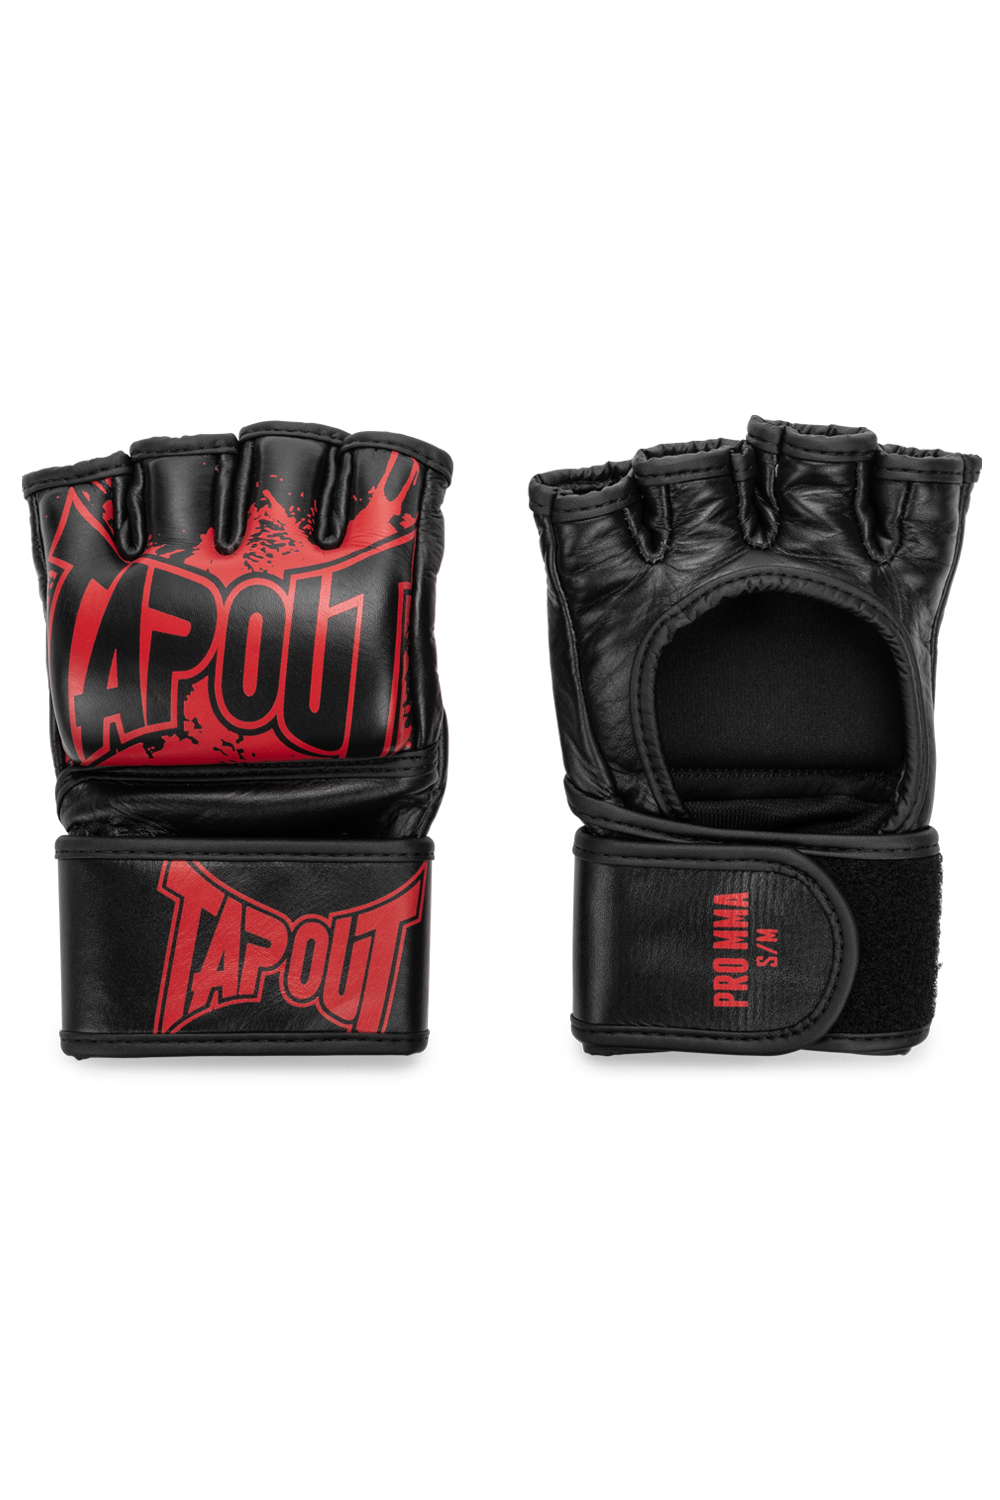 Tapout MMA Pro Fight Handschuhe Aus Leder (1 Paar)